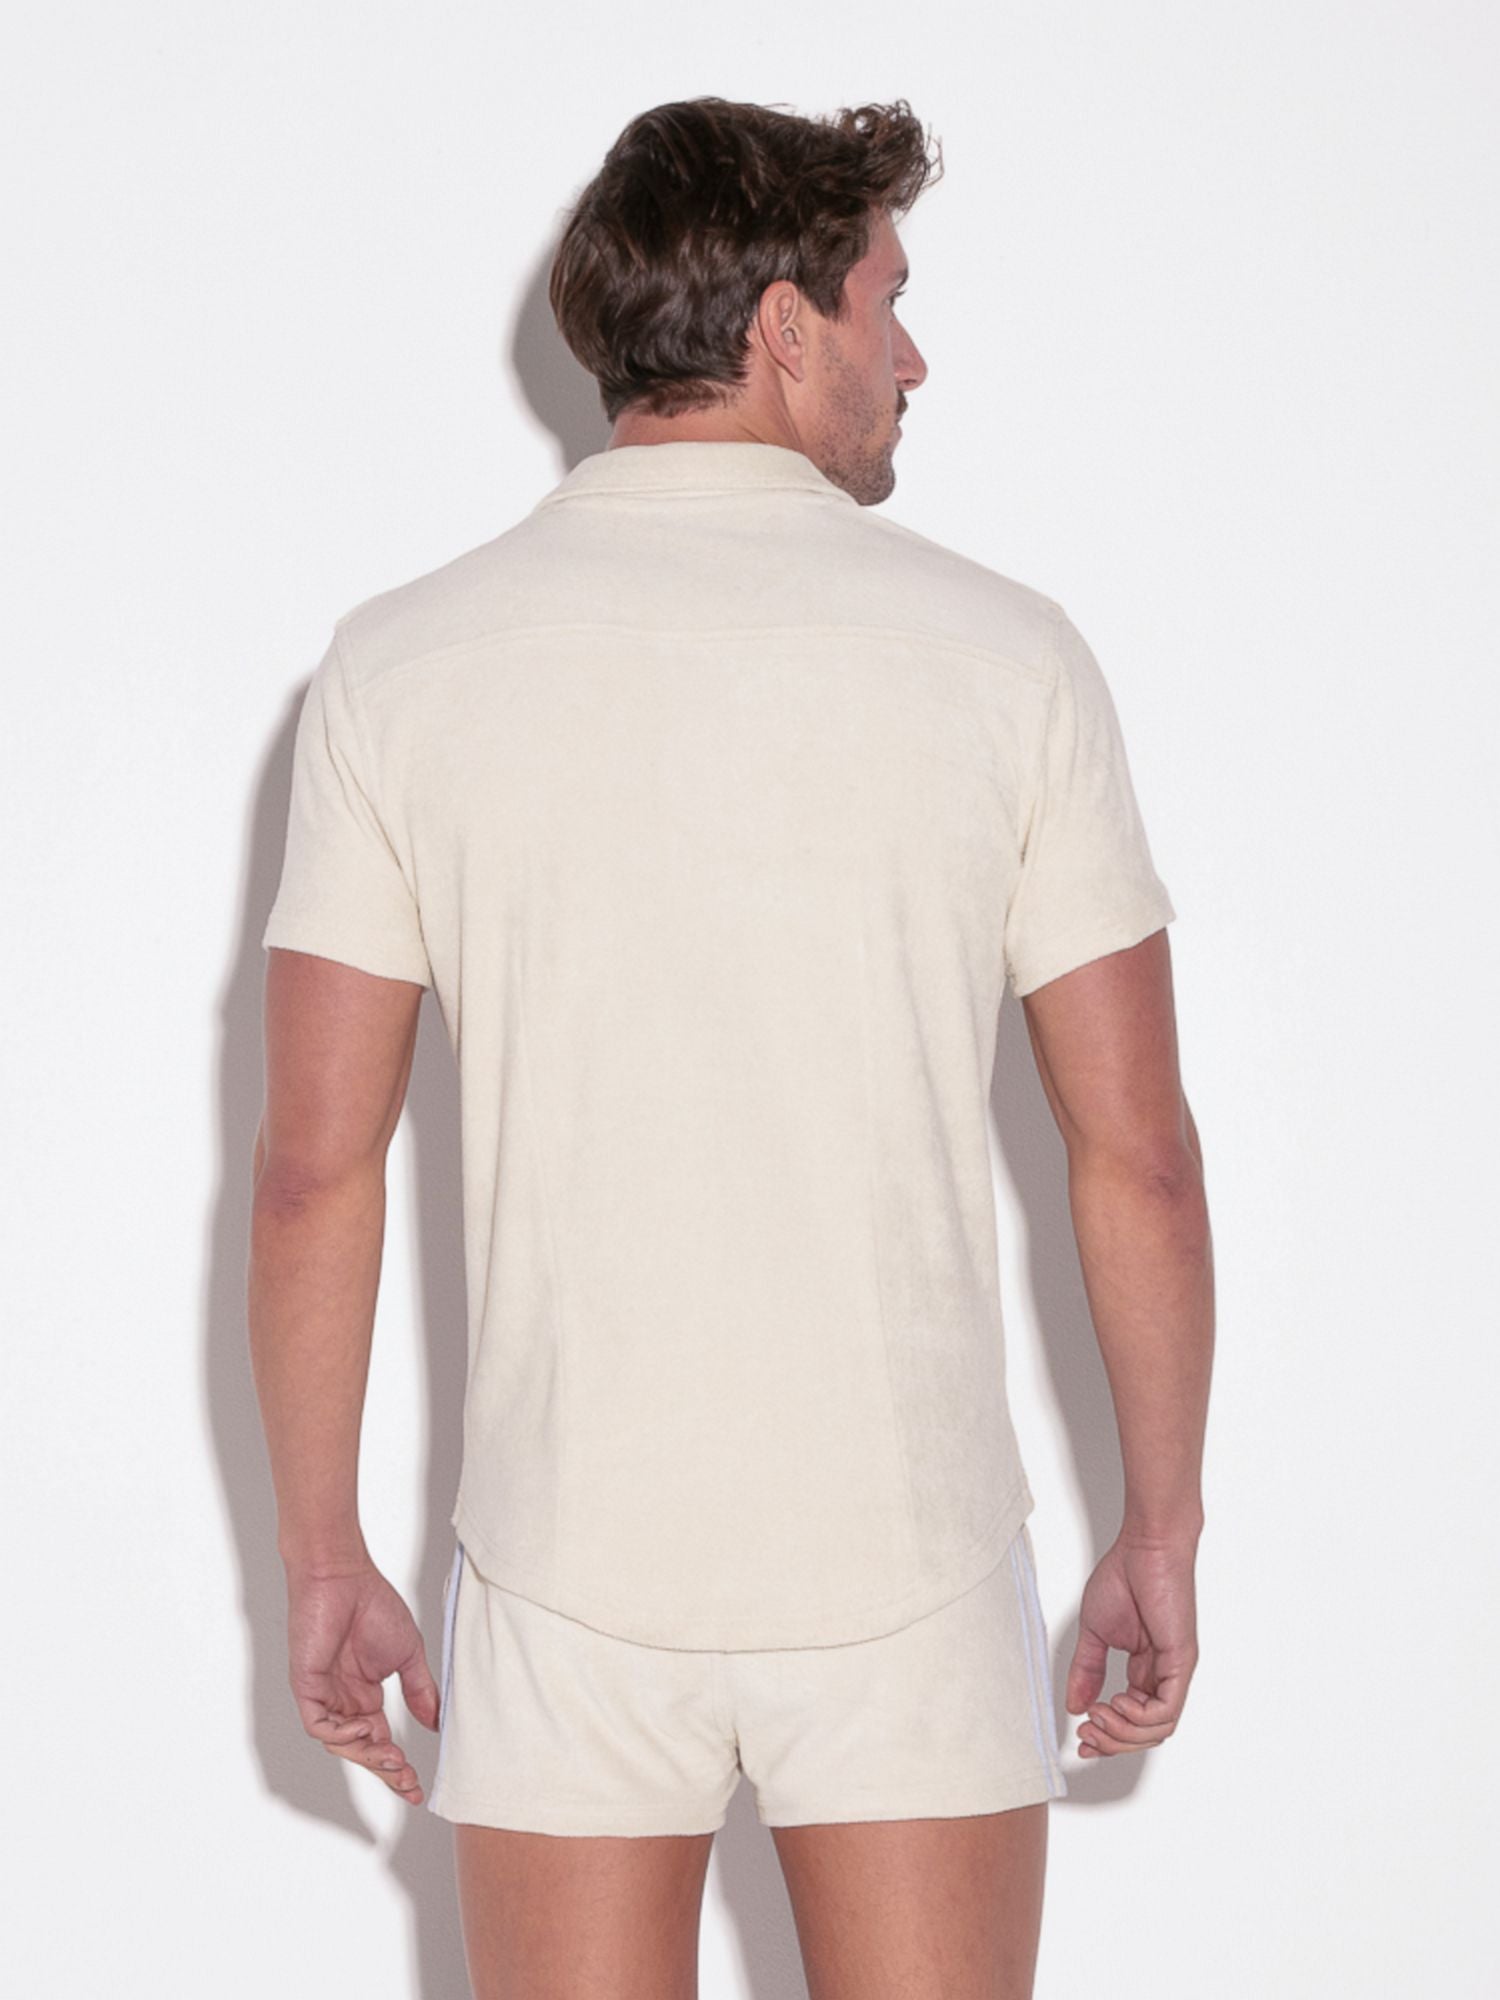 CODE 22 TERRY SHIRT 9729, Freizeithemd aus Frottee Stoff - noodosz - Code 22 - Kleidung & Accessoires:Herren:Herrenmode:Shirts & Hemden:Freizeithemden & Shirts